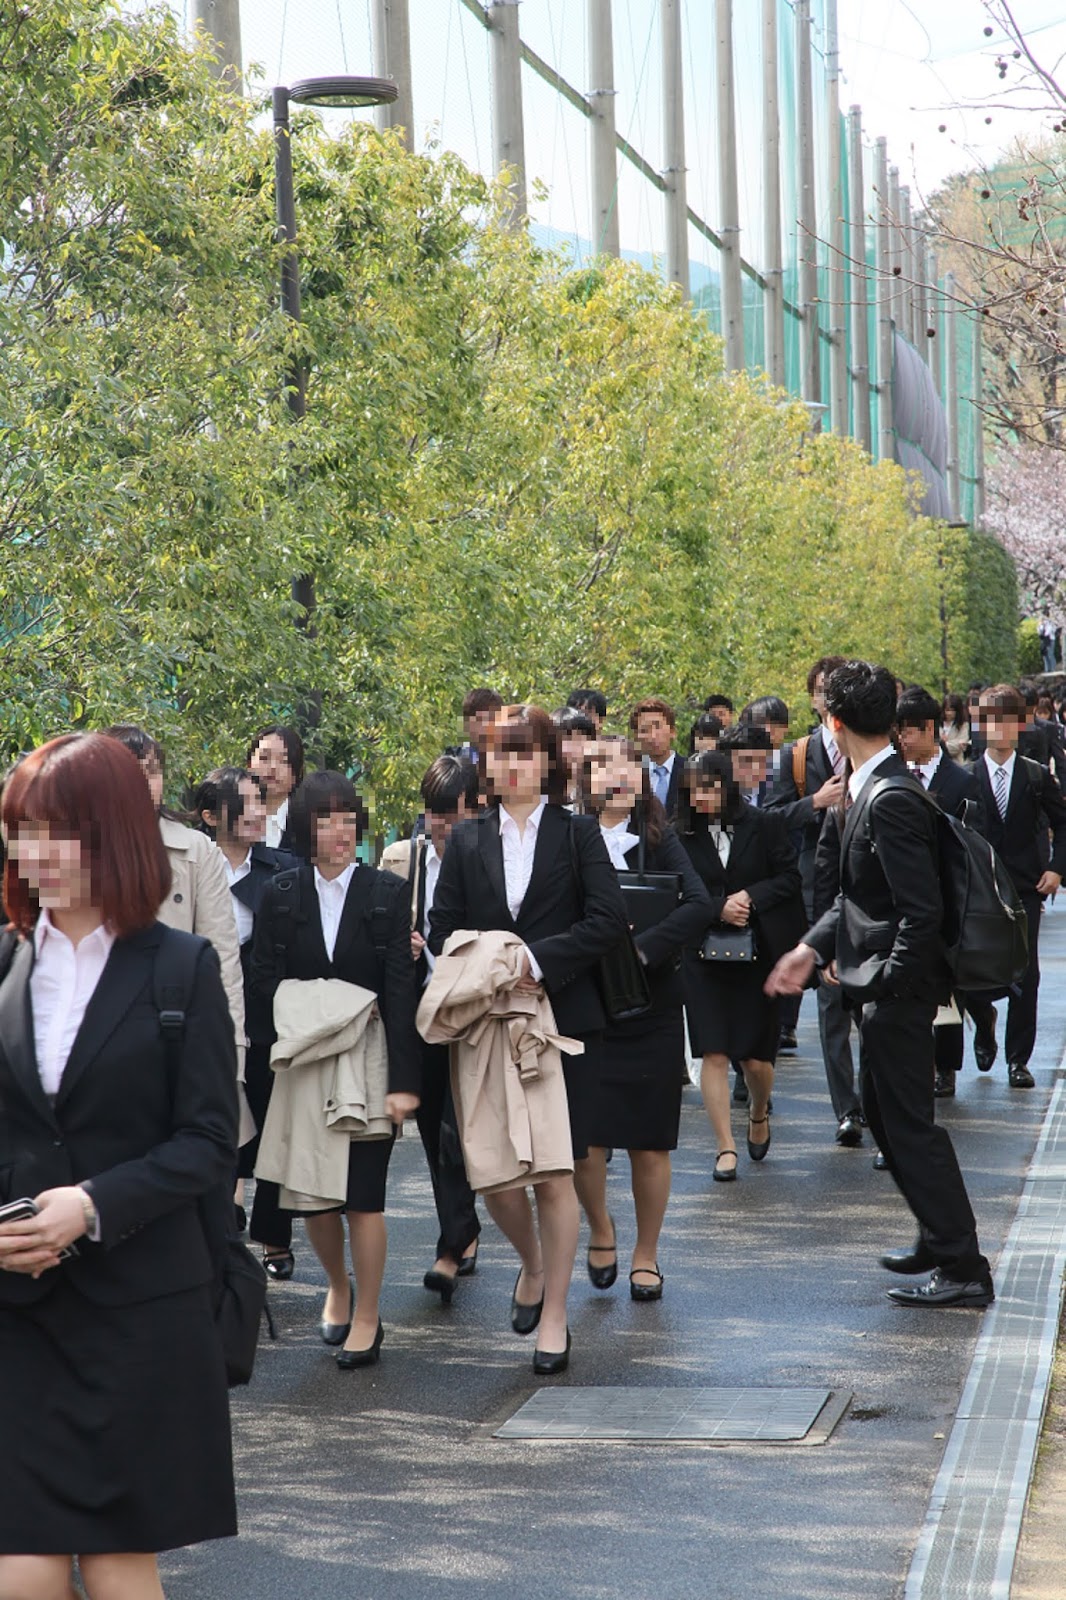 入学 式 大学 関西 関西大学で2年ぶりに入学式 6660人が関大生に